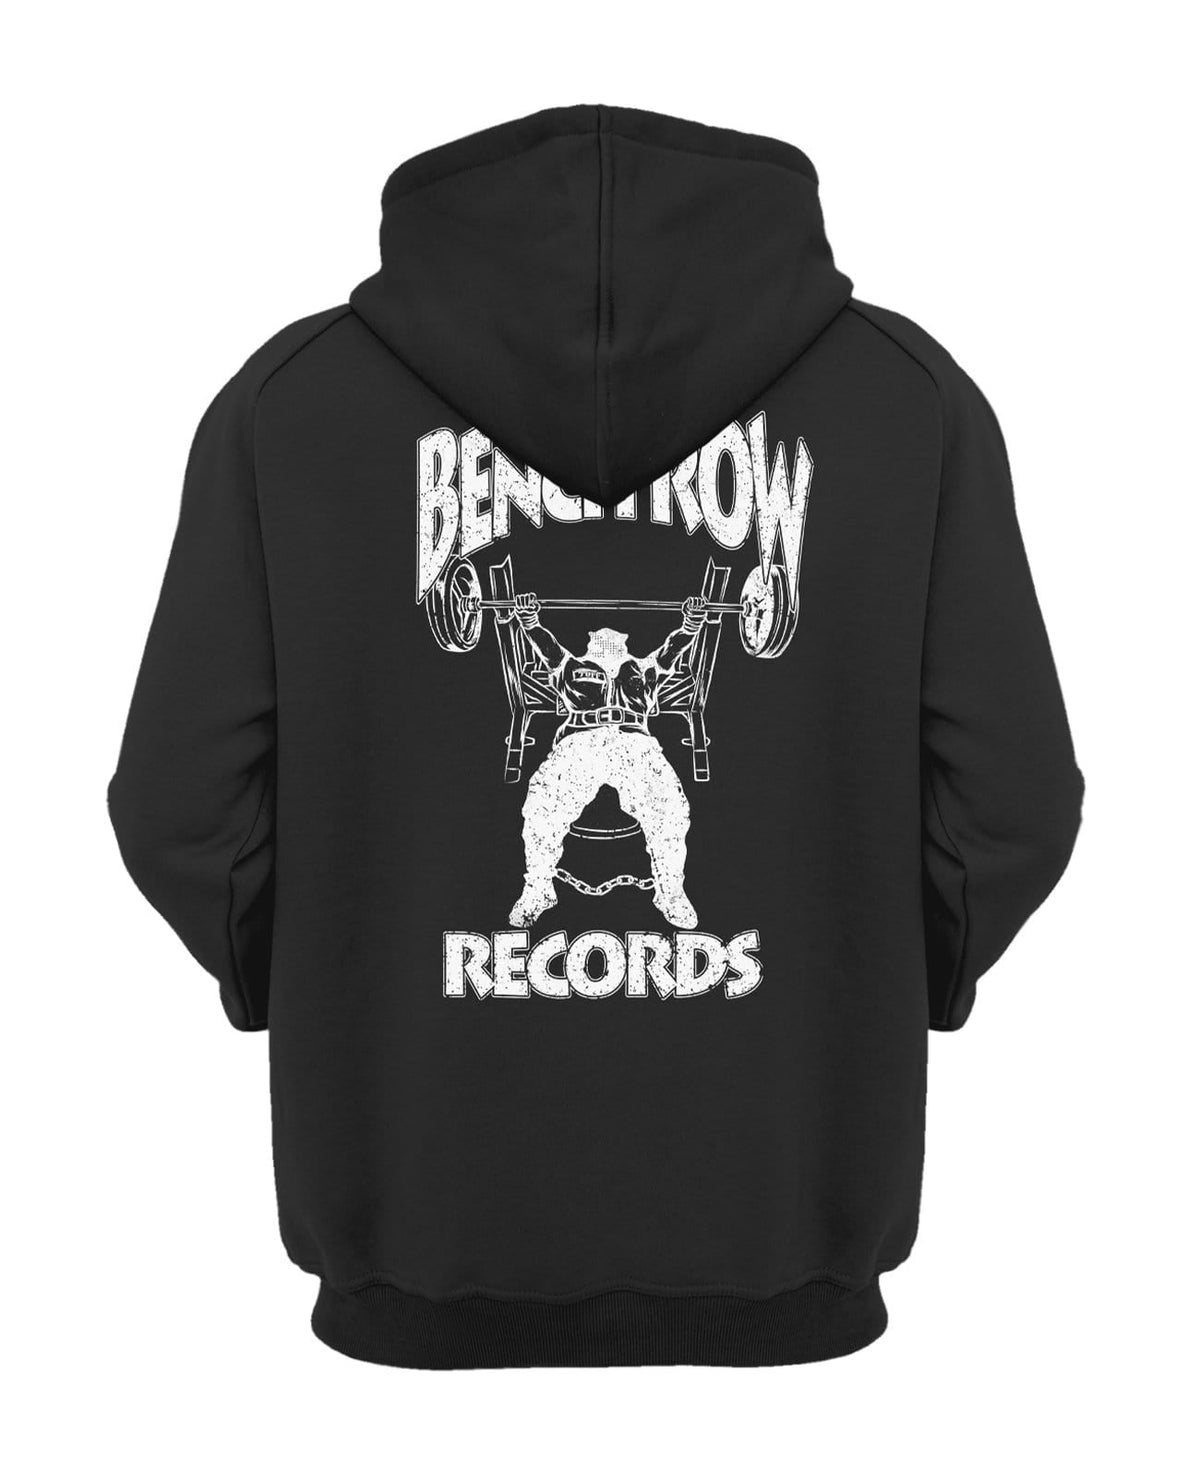 Bench Row Records Hooded Sweatshirt XS / Black v2 TuffWraps.com